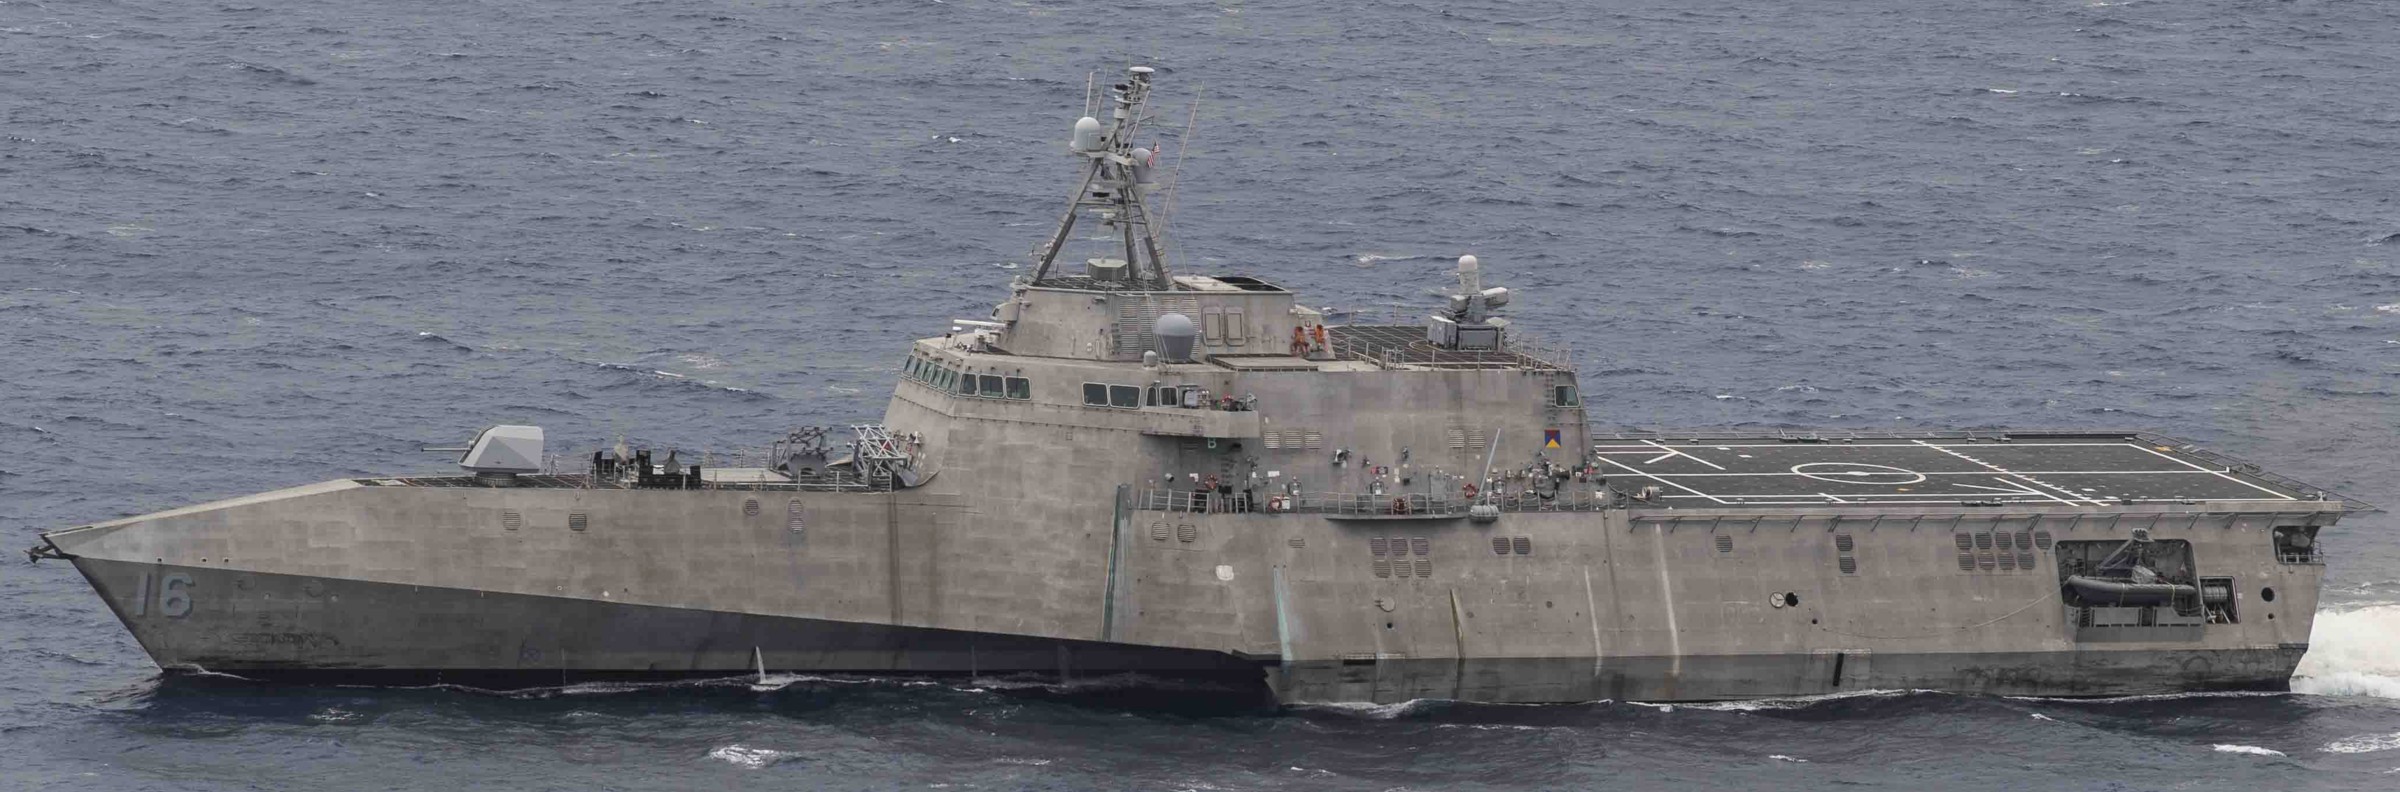 lcs-16 uss tulsa independence class littoral combat ship us navy 28